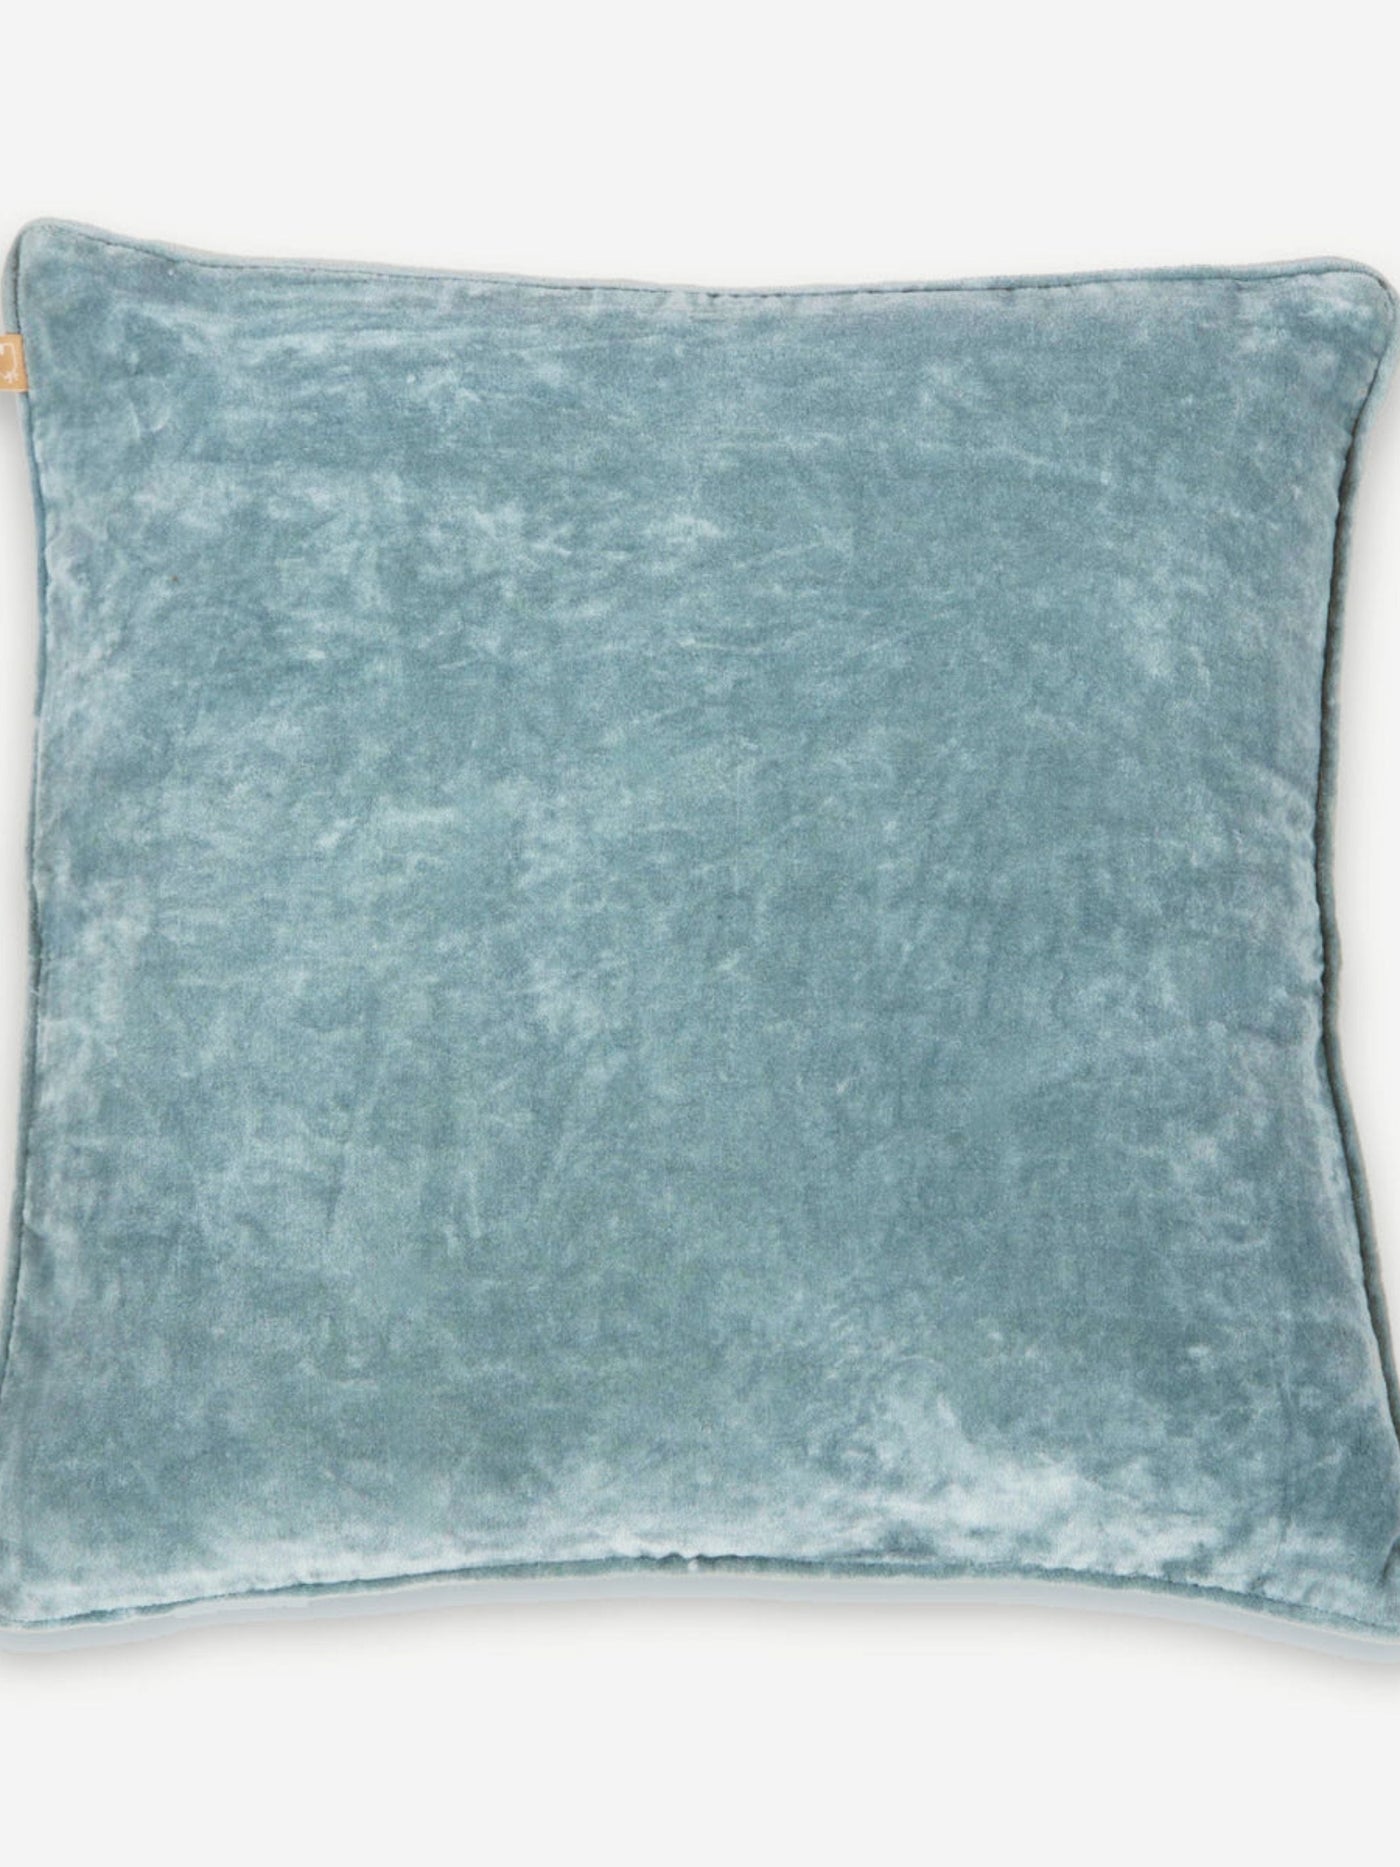 Cushion Cover - Soft Blue Velvet Euro Sham